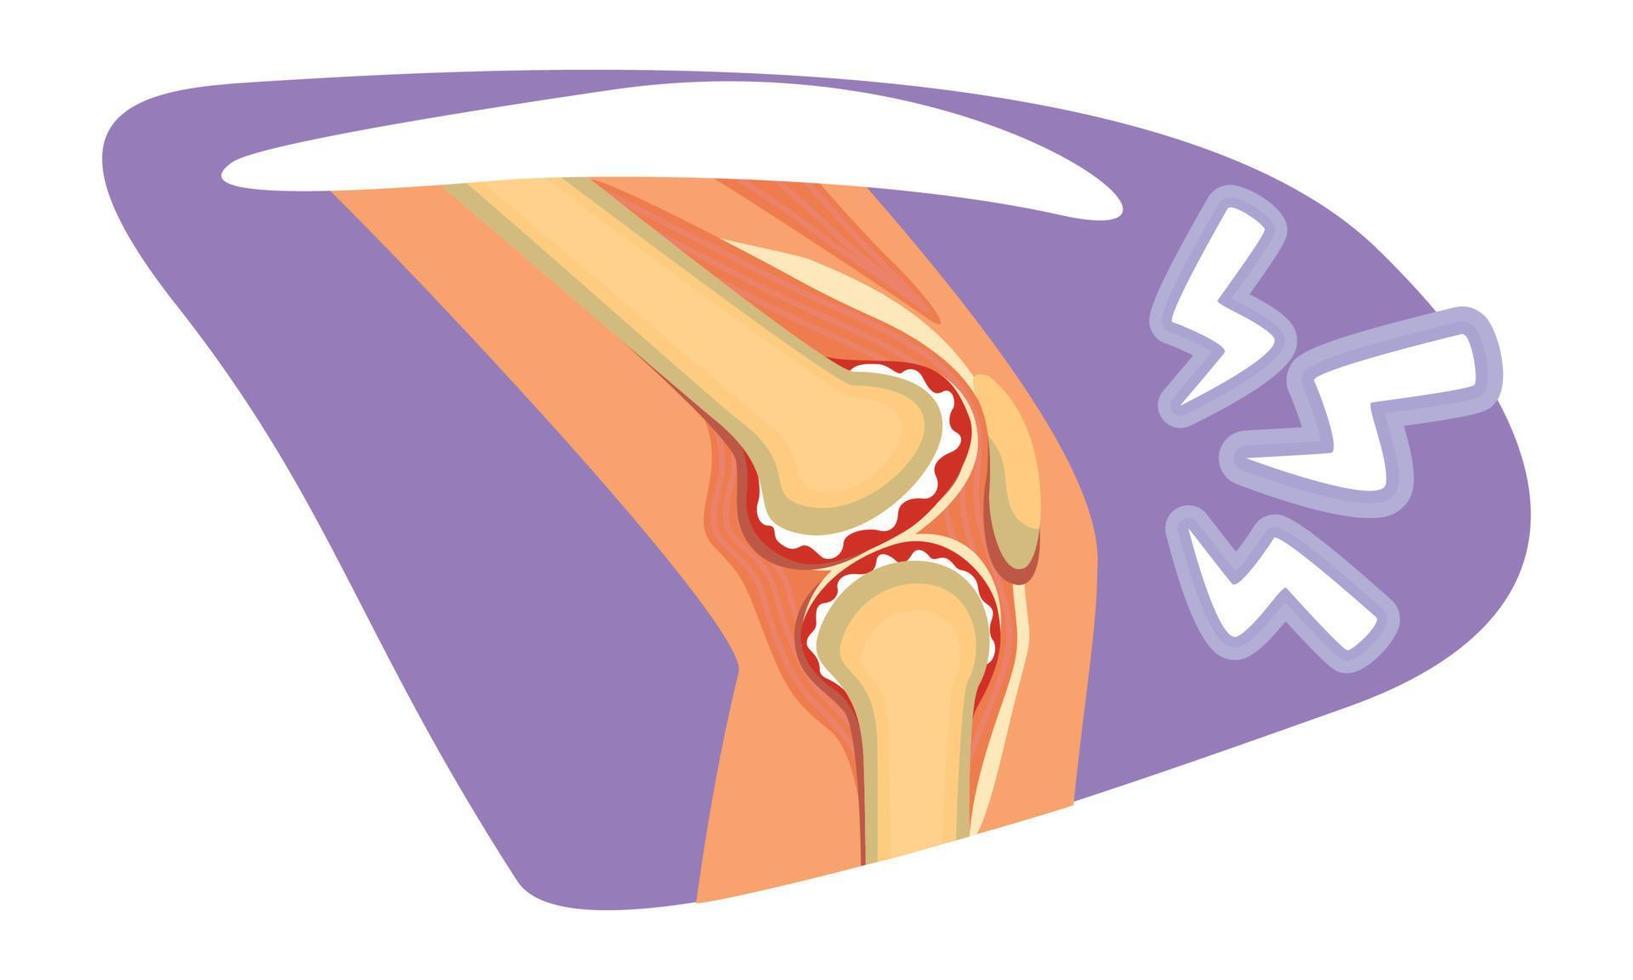 ilustração isolada em vetor 2d de dor no joelho